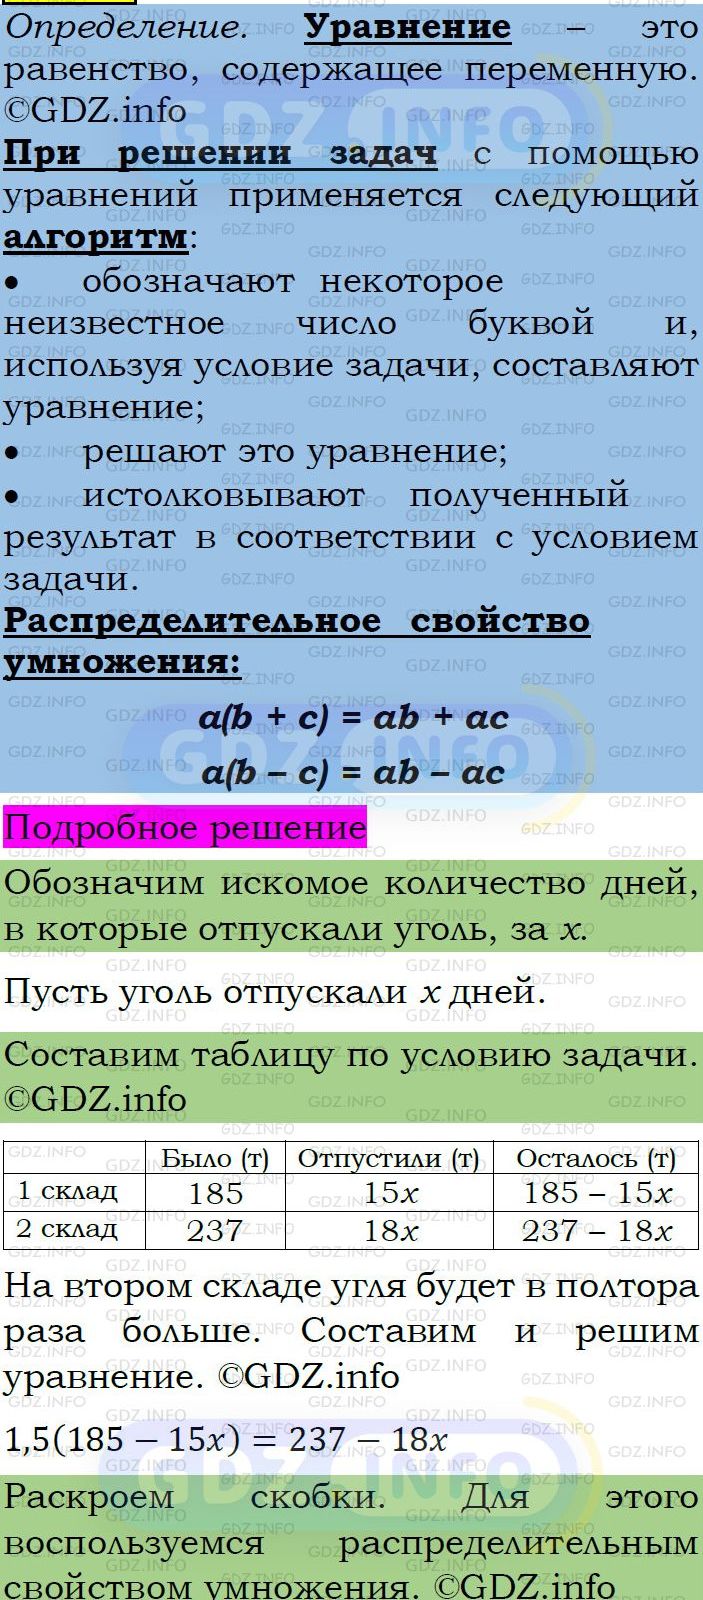 Фото подробного решения: Номер задания №496 из ГДЗ по Алгебре 7 класс: Макарычев Ю.Н.